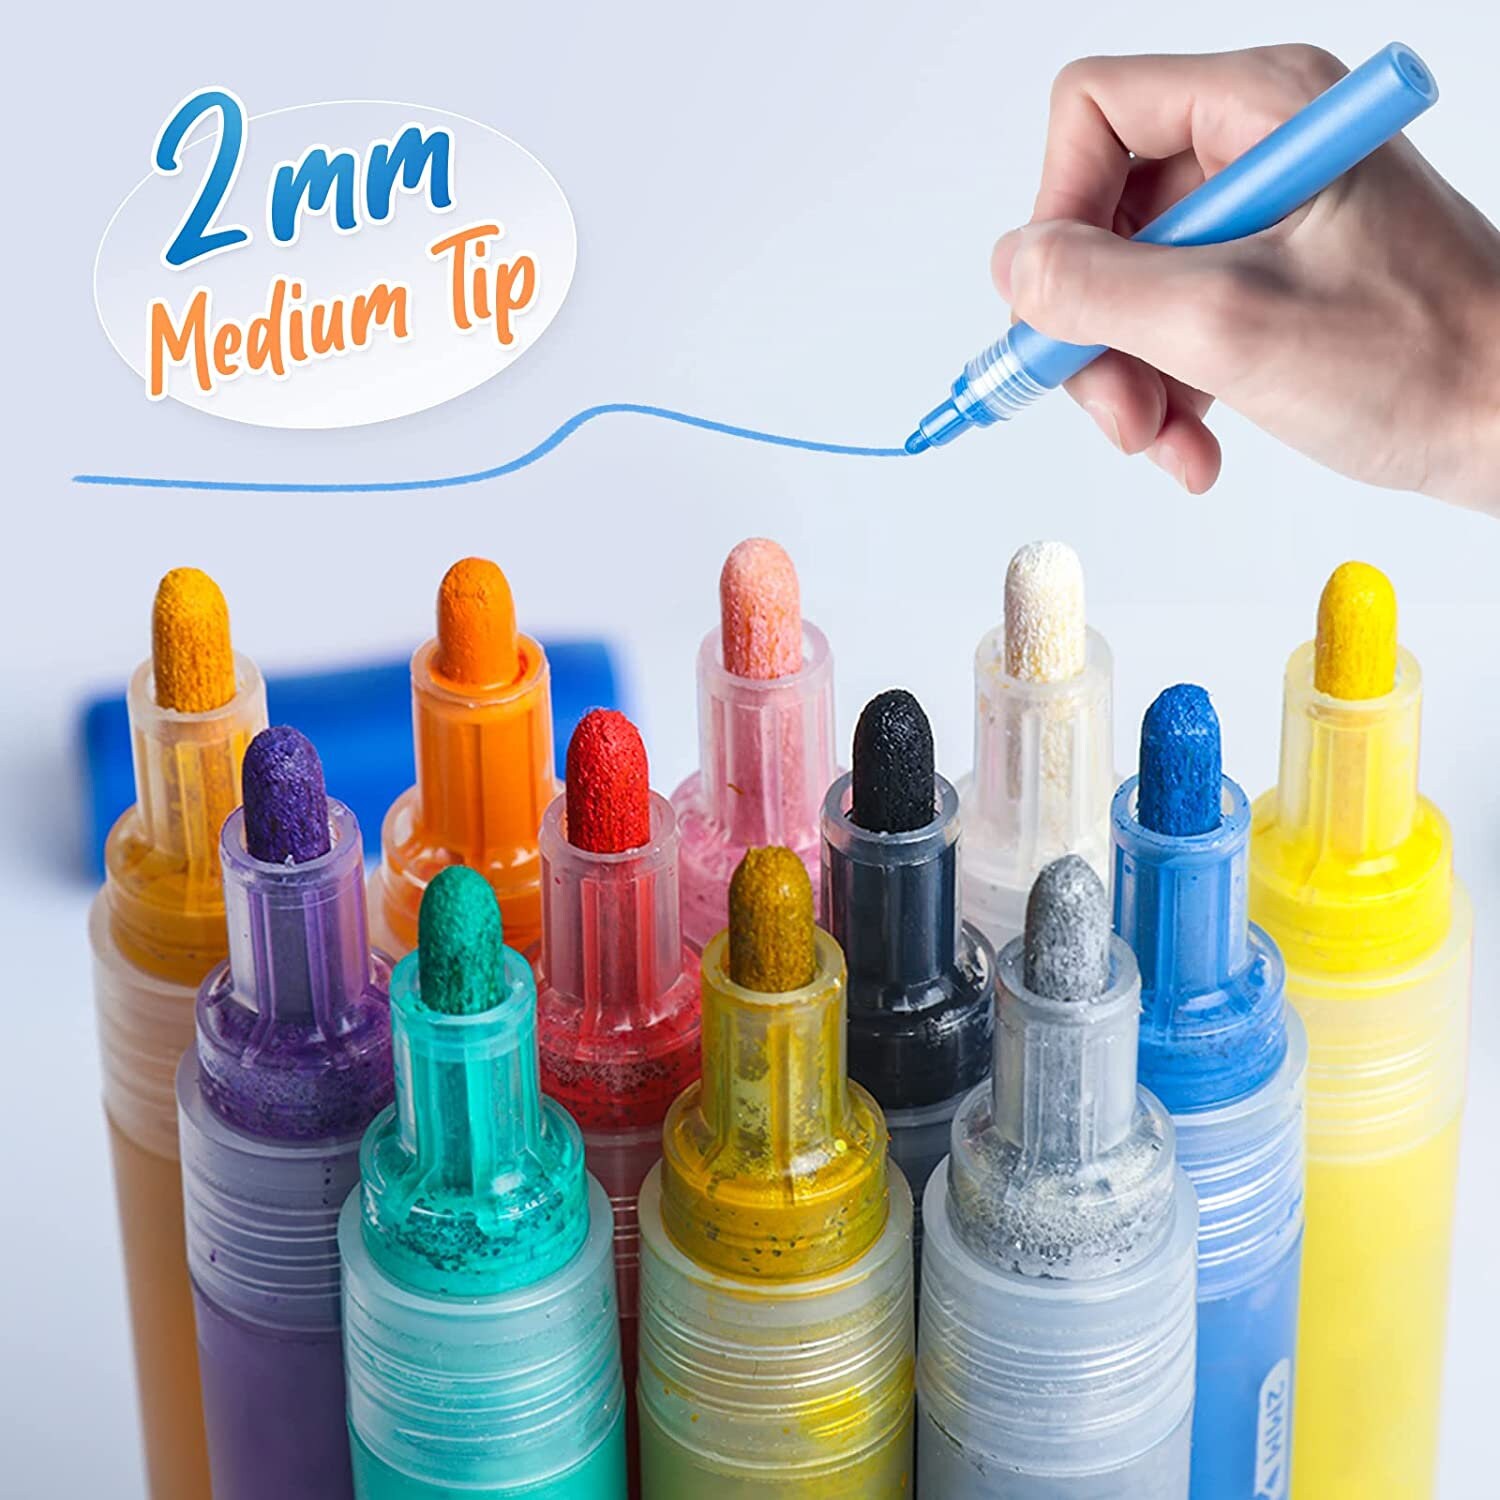 Classic Acrylic Paint Pen Set - 12 pcs